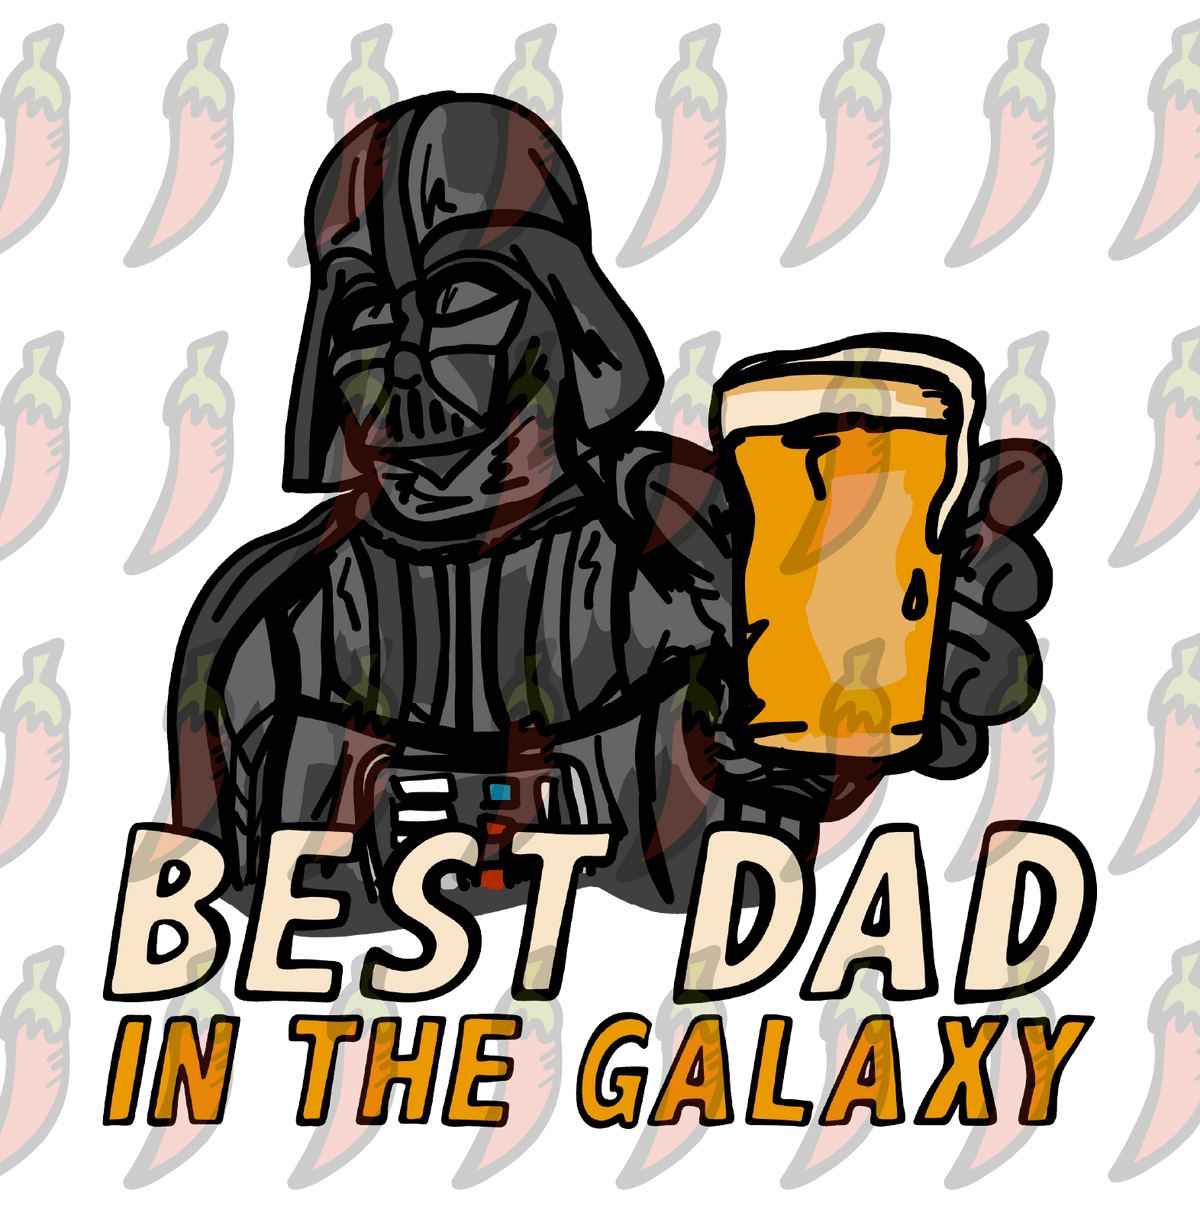 Best Dad in the Galaxy 🌌 - Coffee Mug